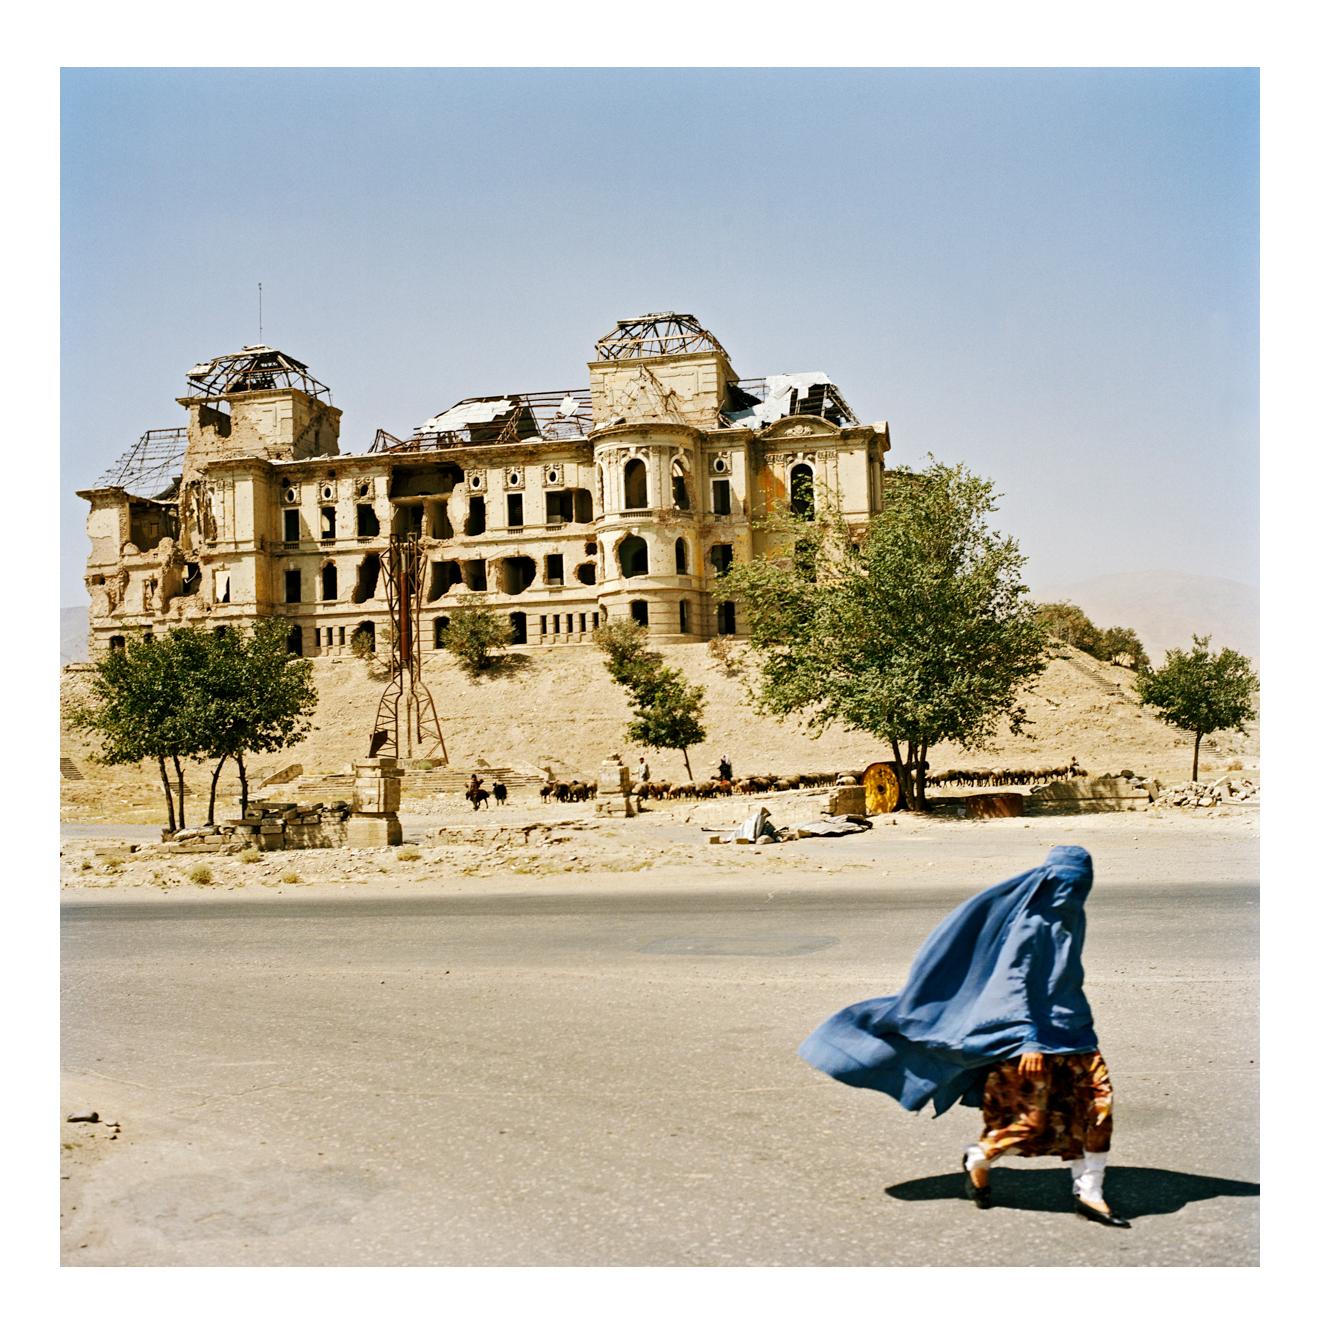 at the Darulaman Palace, Kabul, August 2003